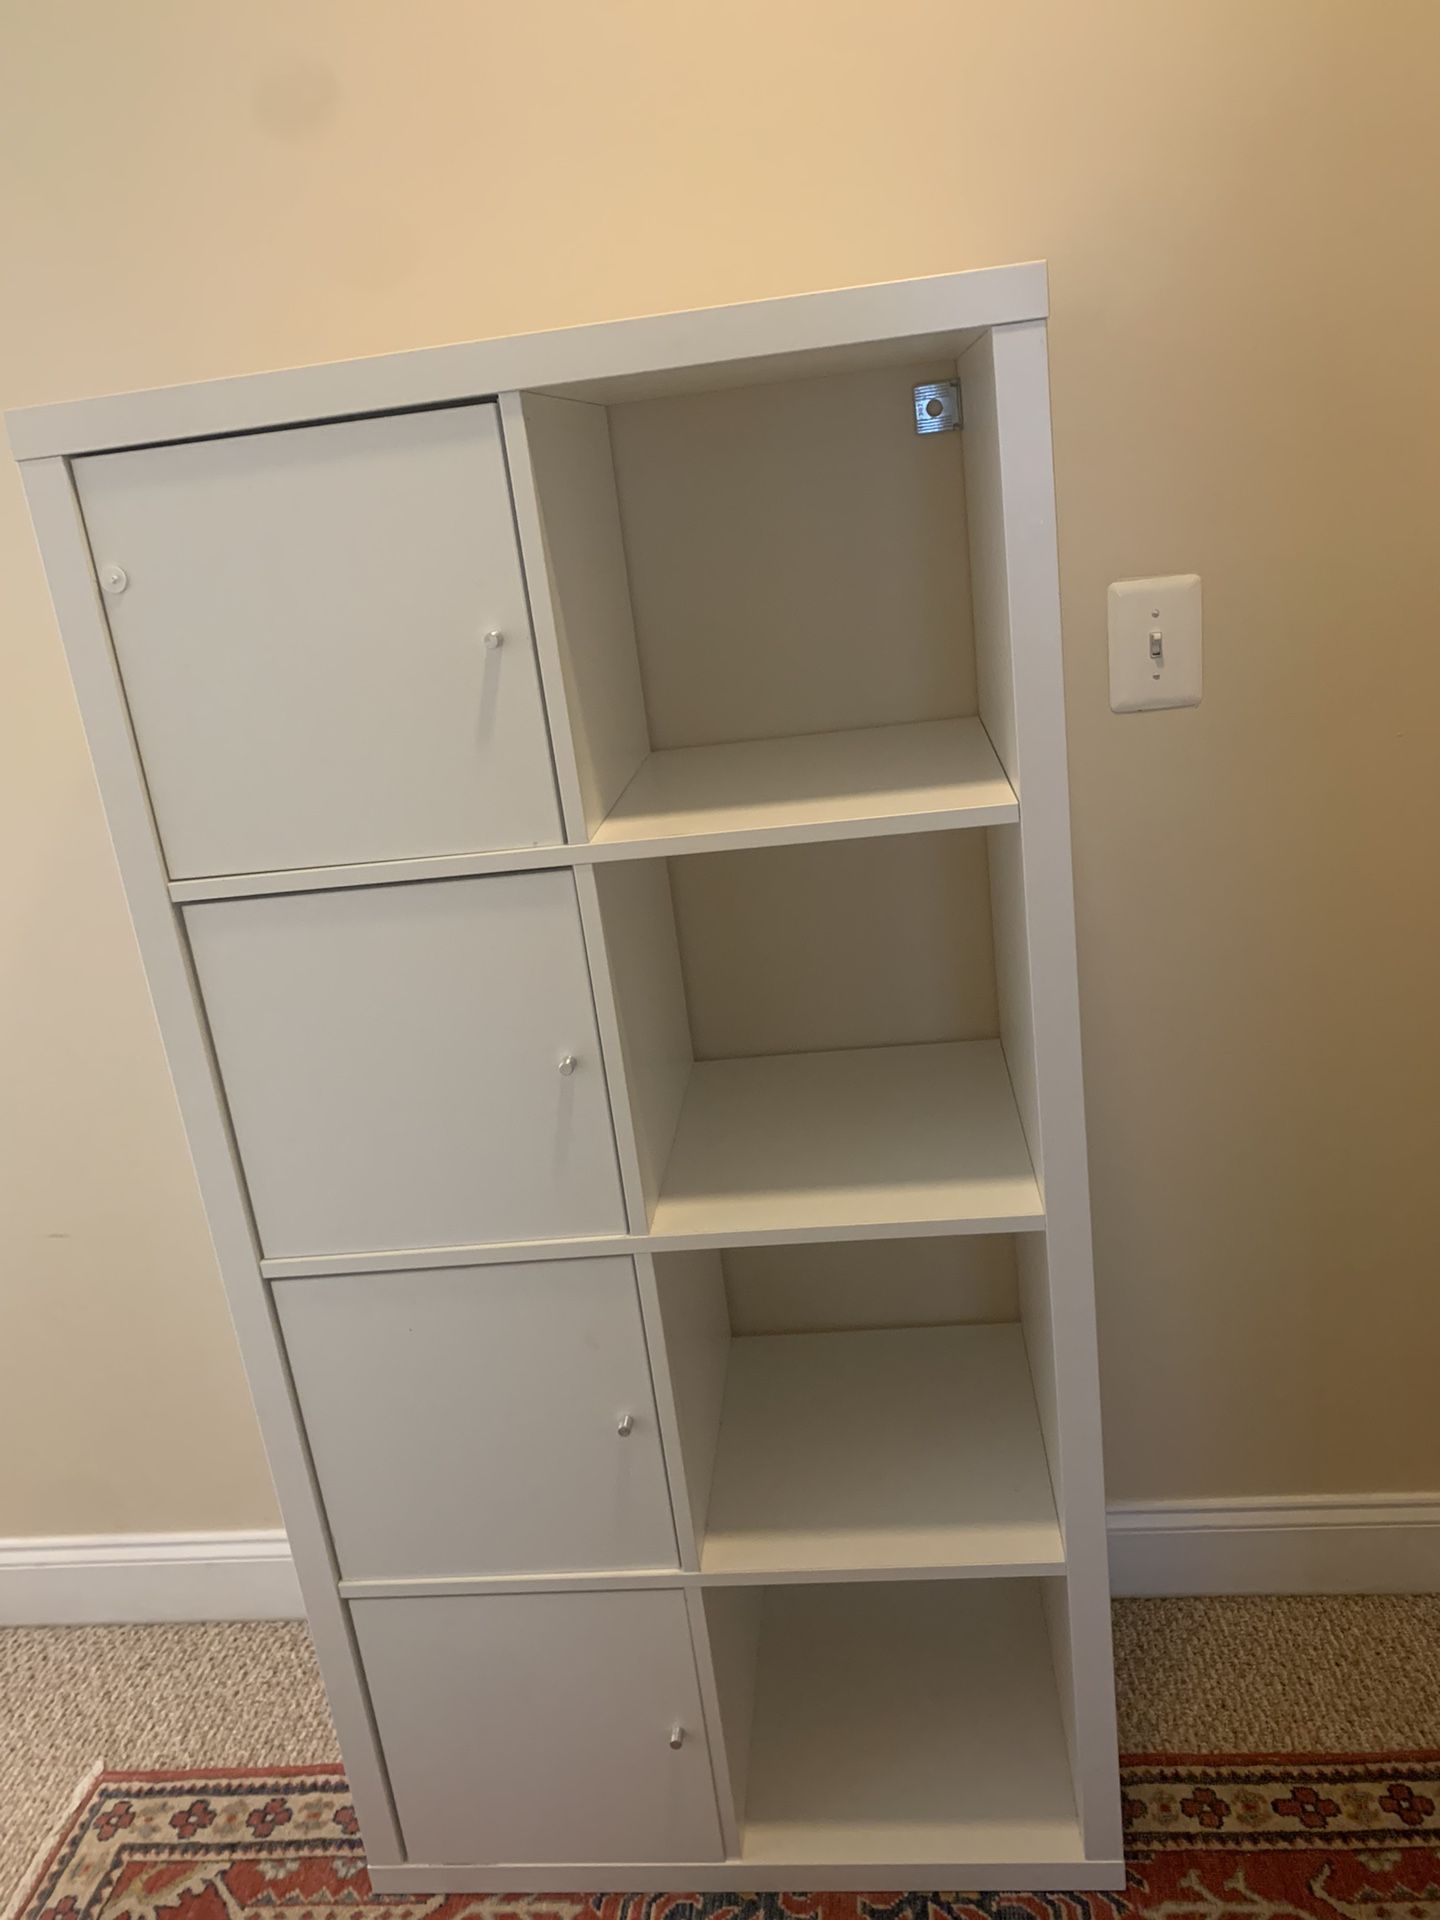 IKEA Storage Cabinets 